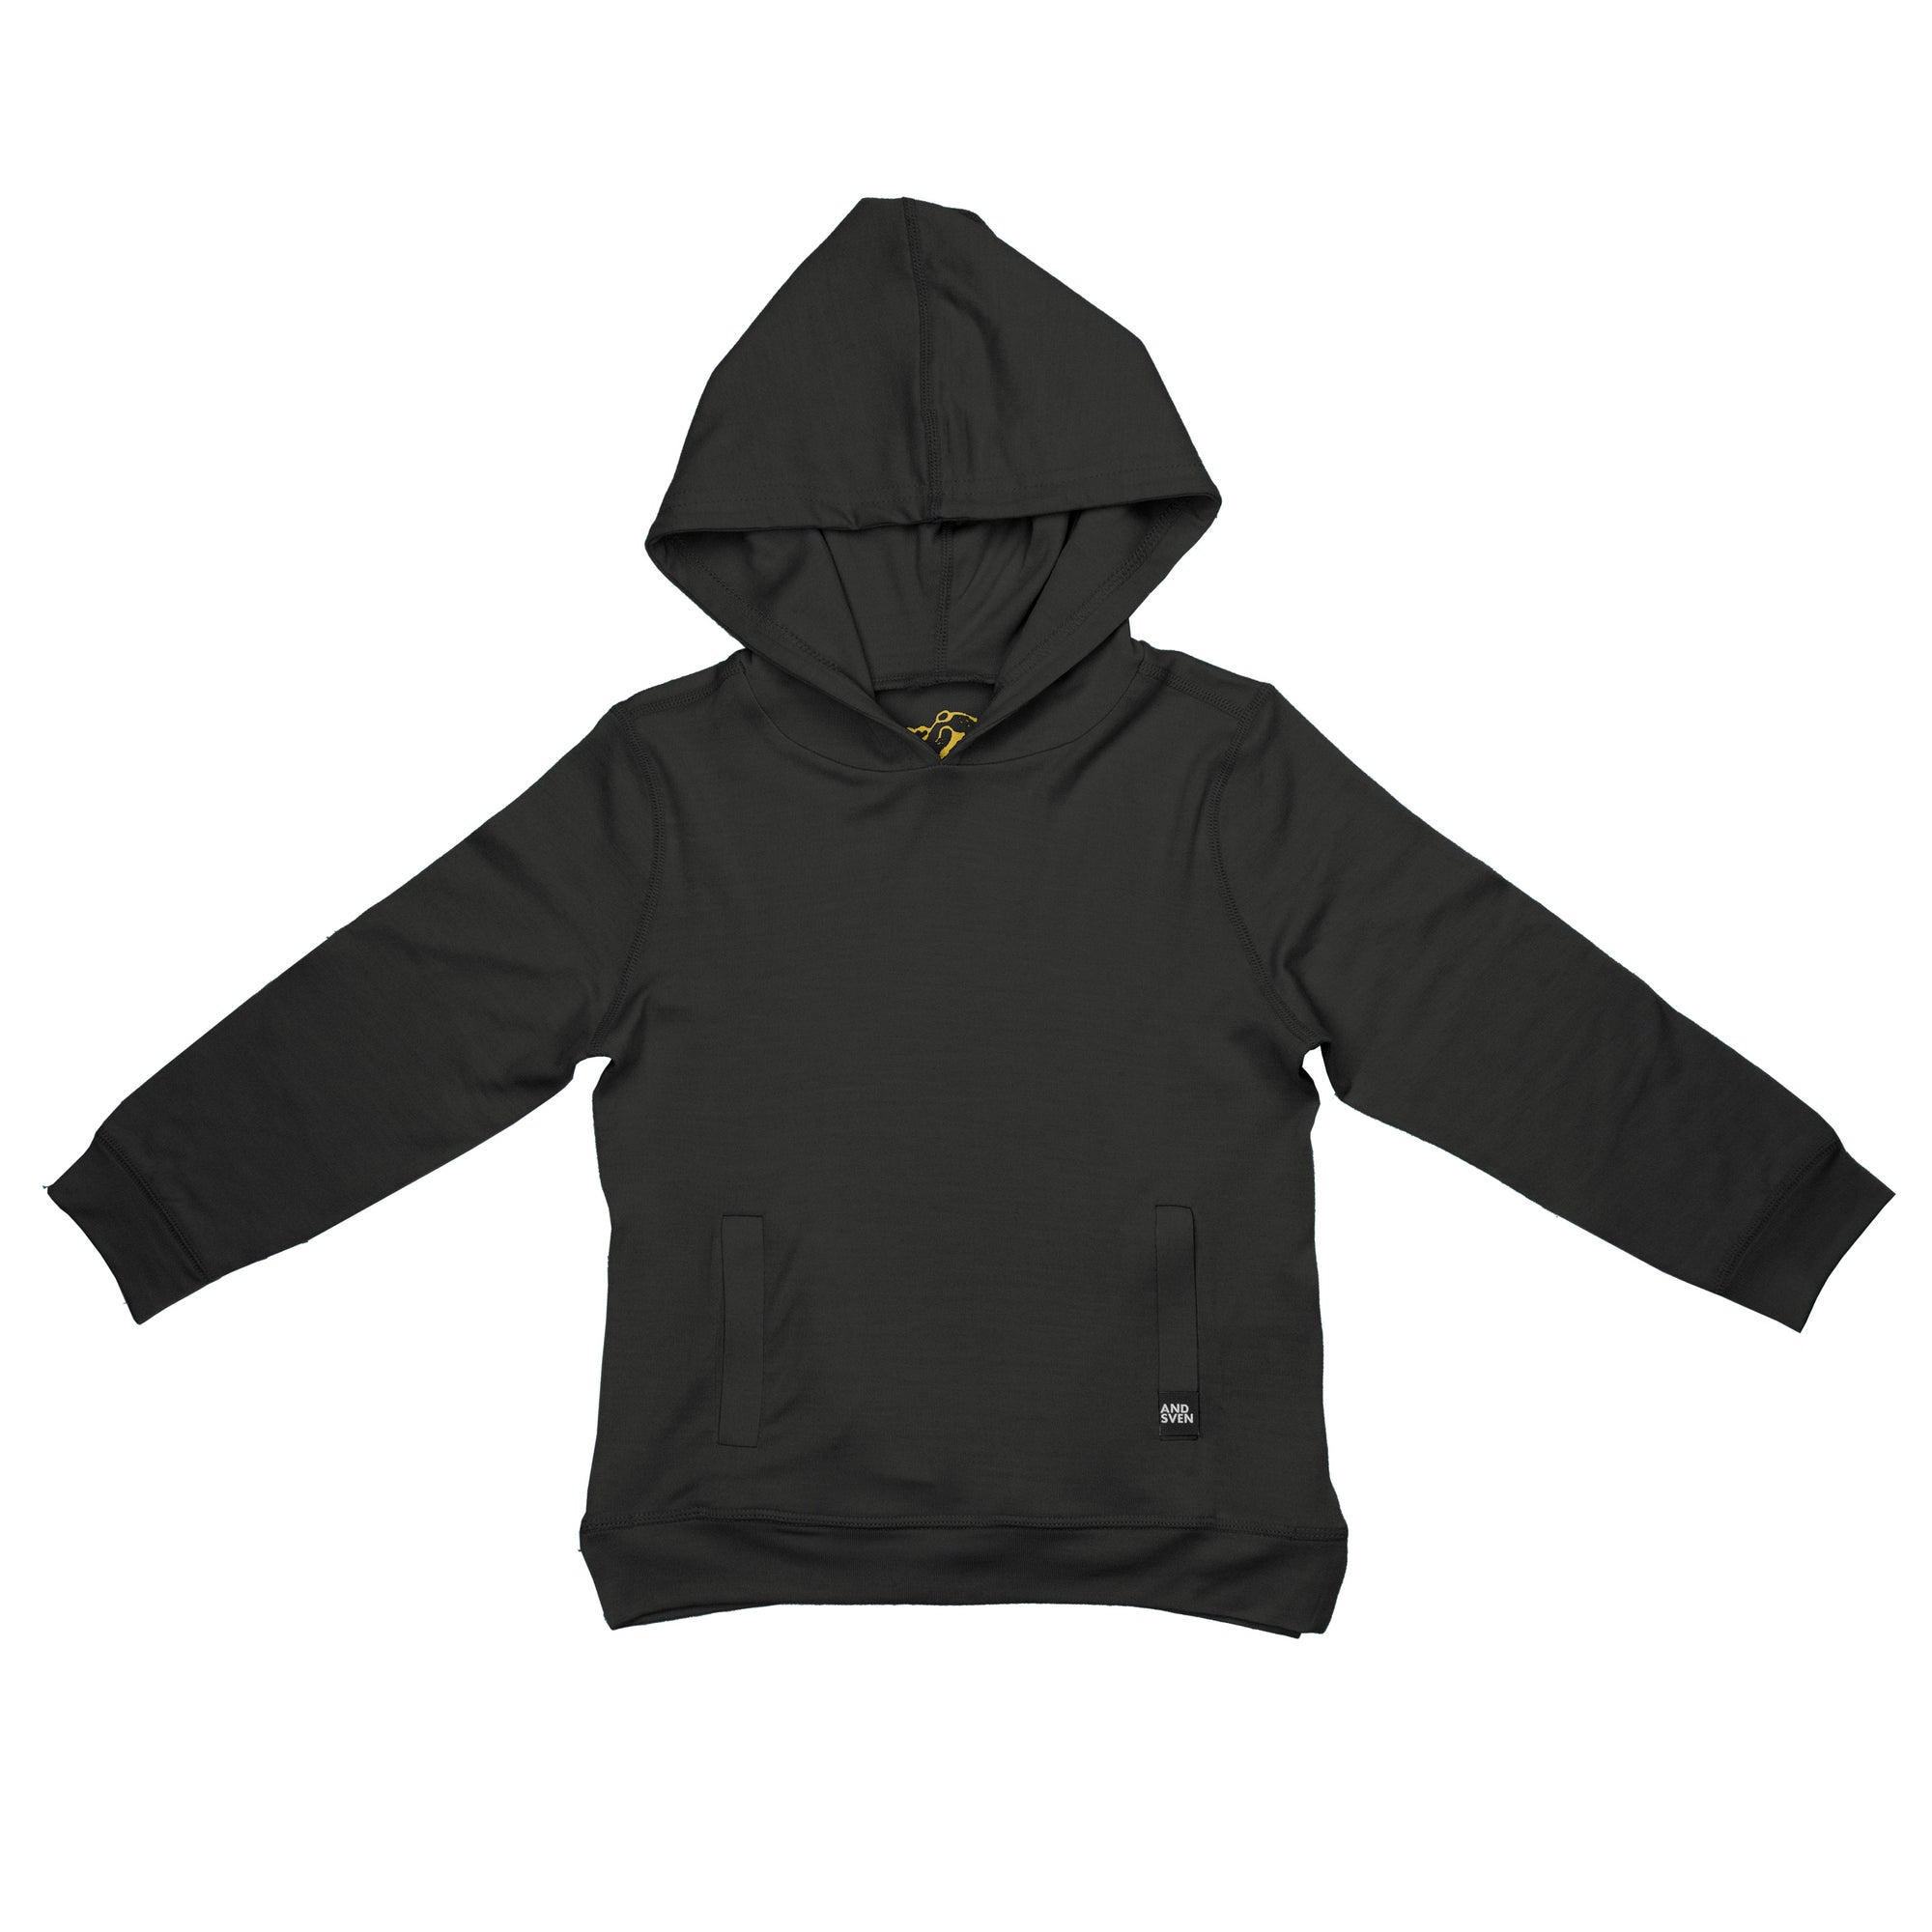 perfect black hoodie